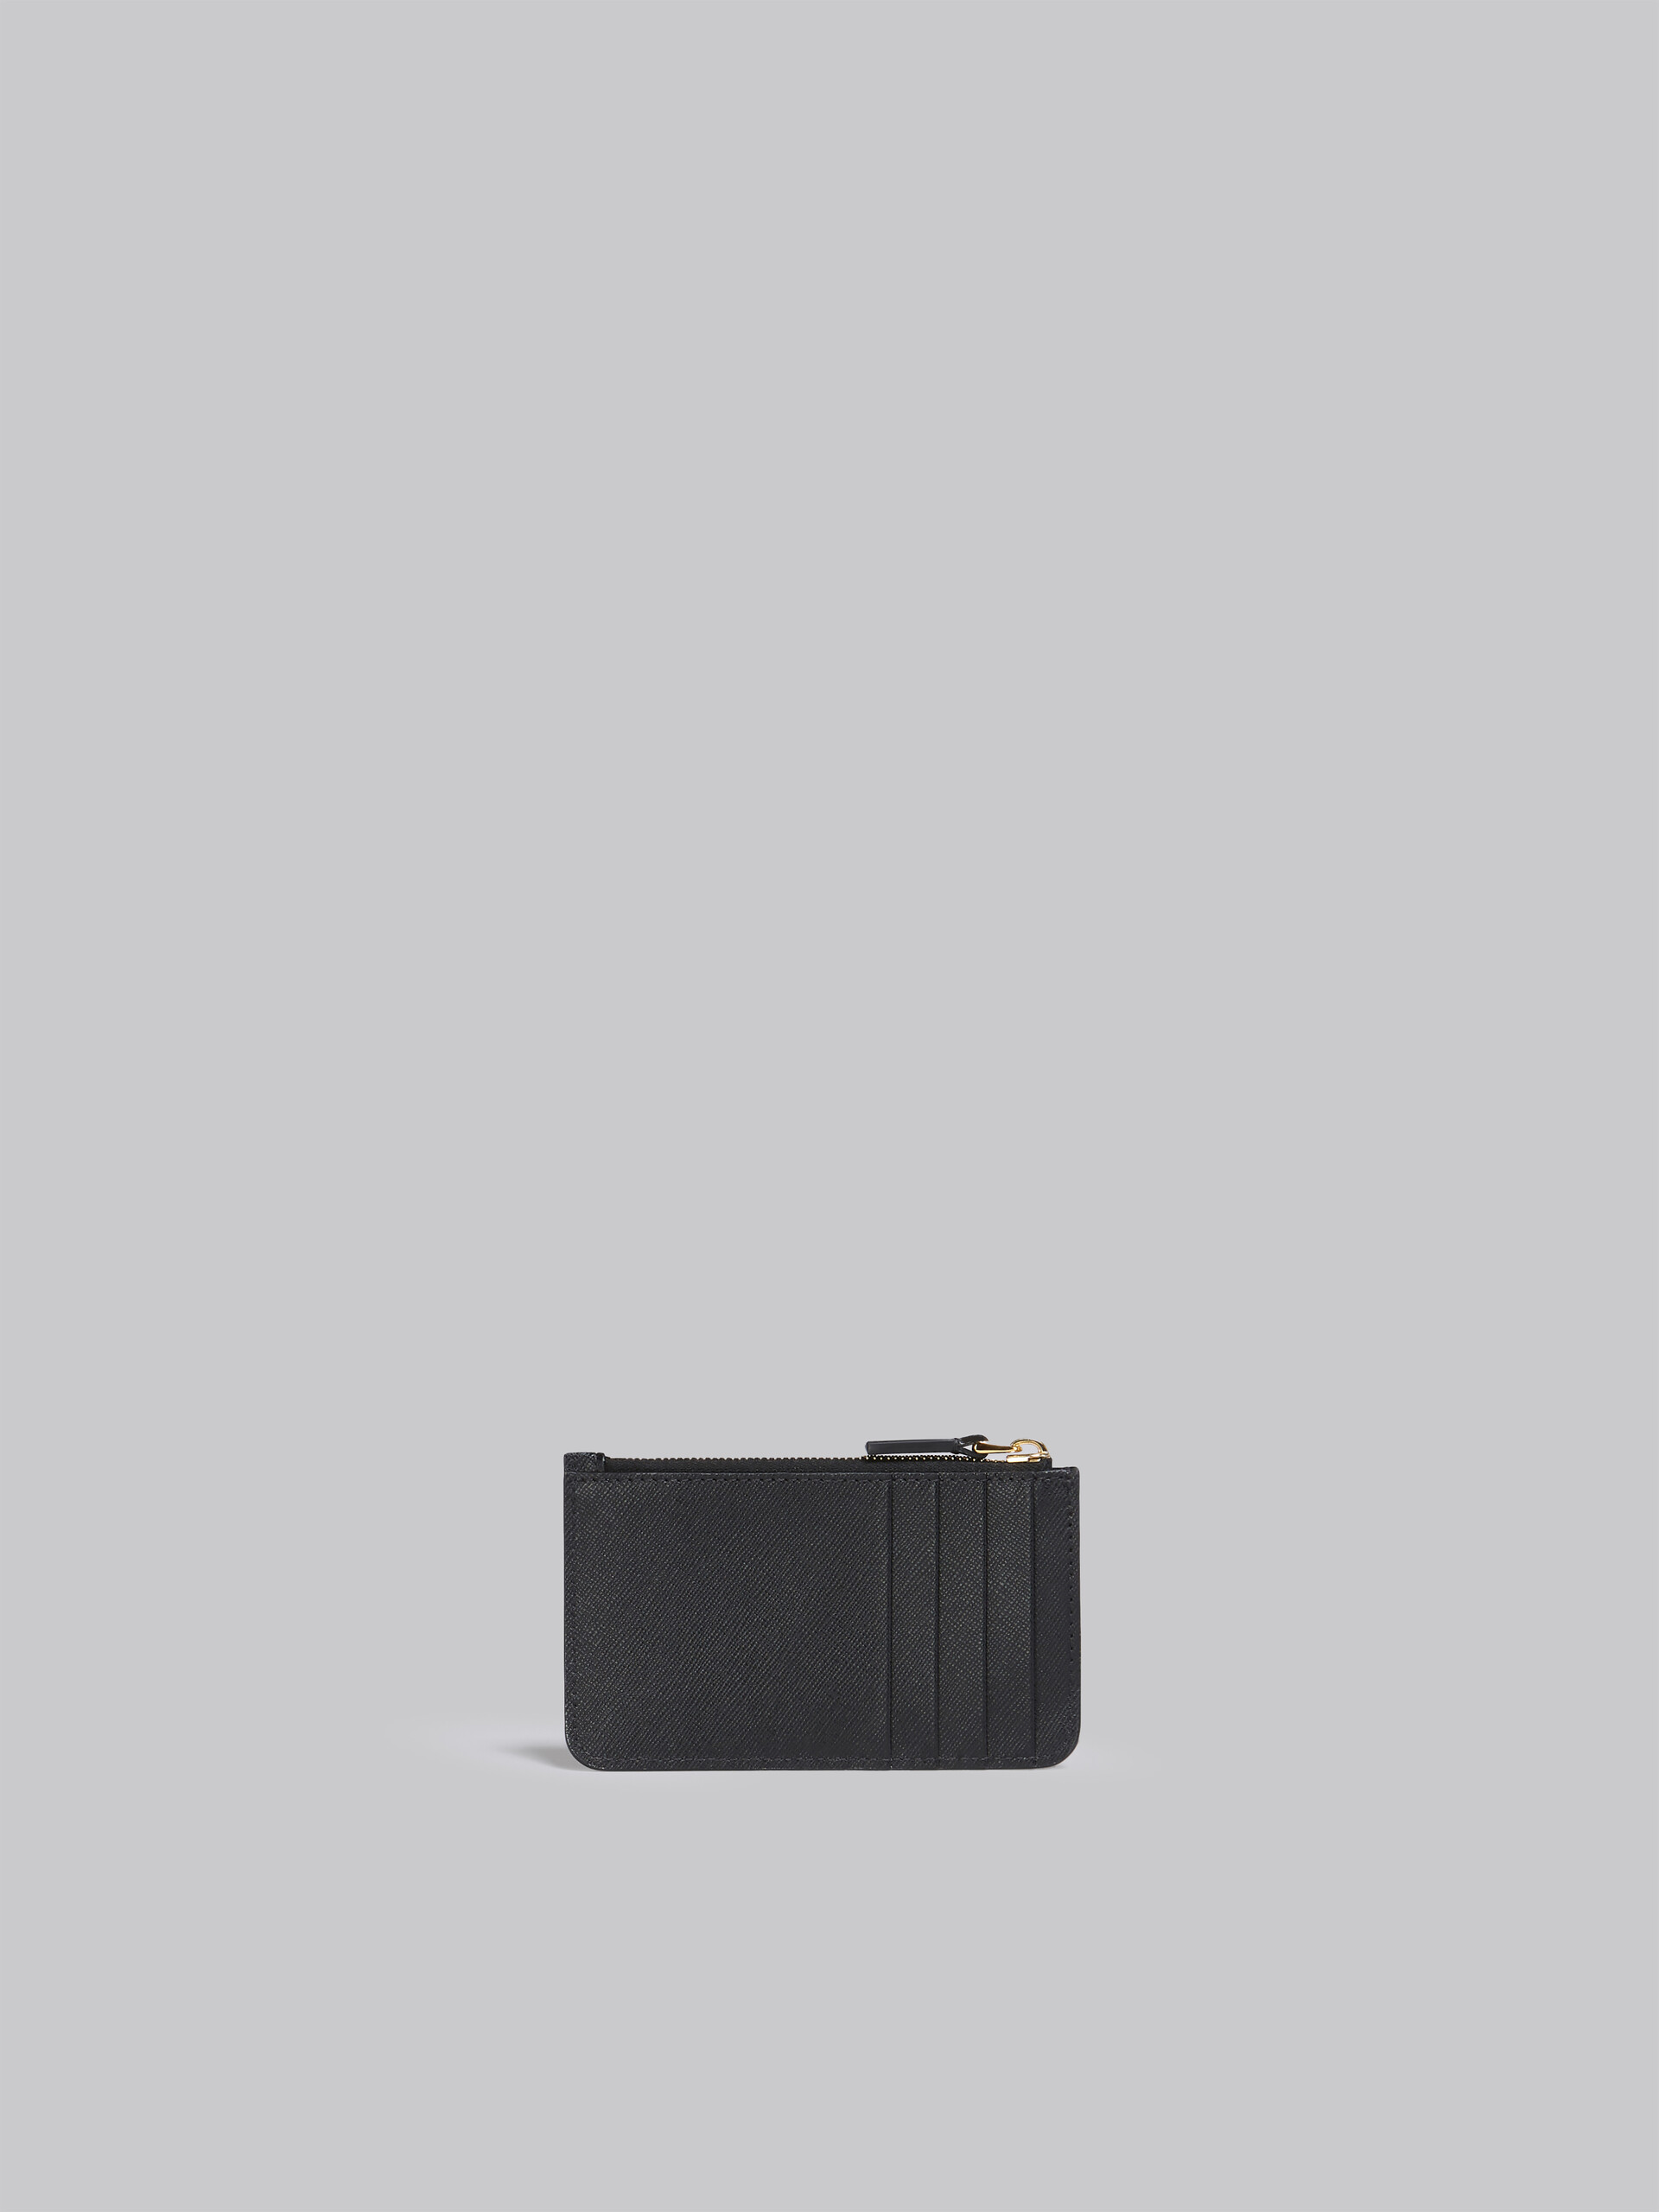 ブラック サフィアーノレザー製 カードケース - 財布 - Image 3